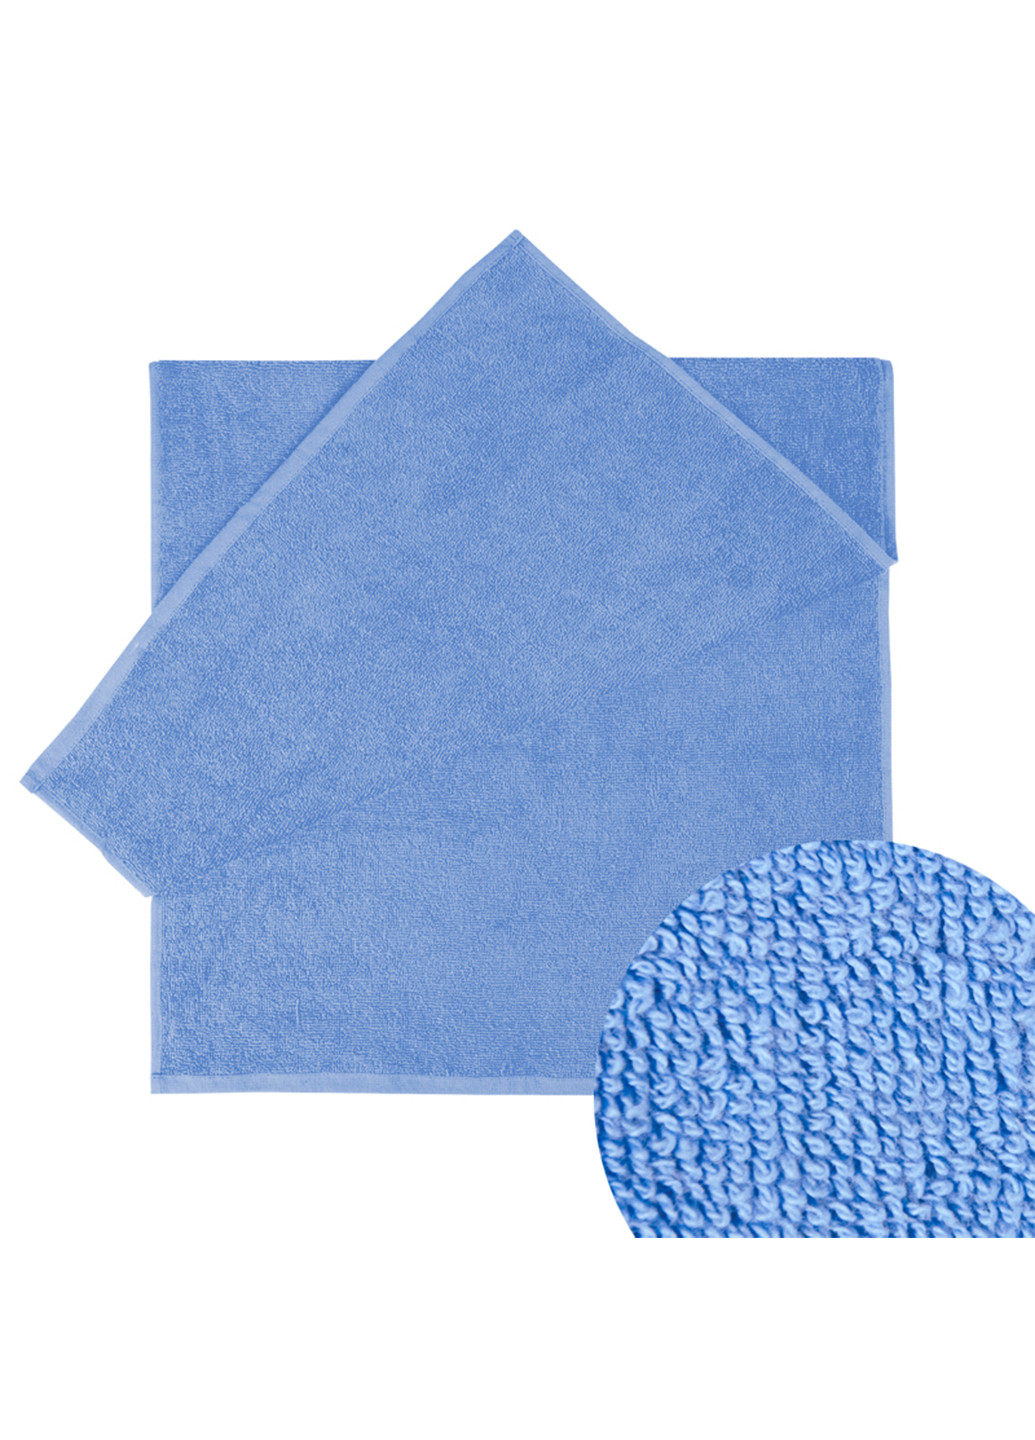 Ярослав полотенце яр-400 махровое 40х70 однотонный темно-голубой производство - Украина